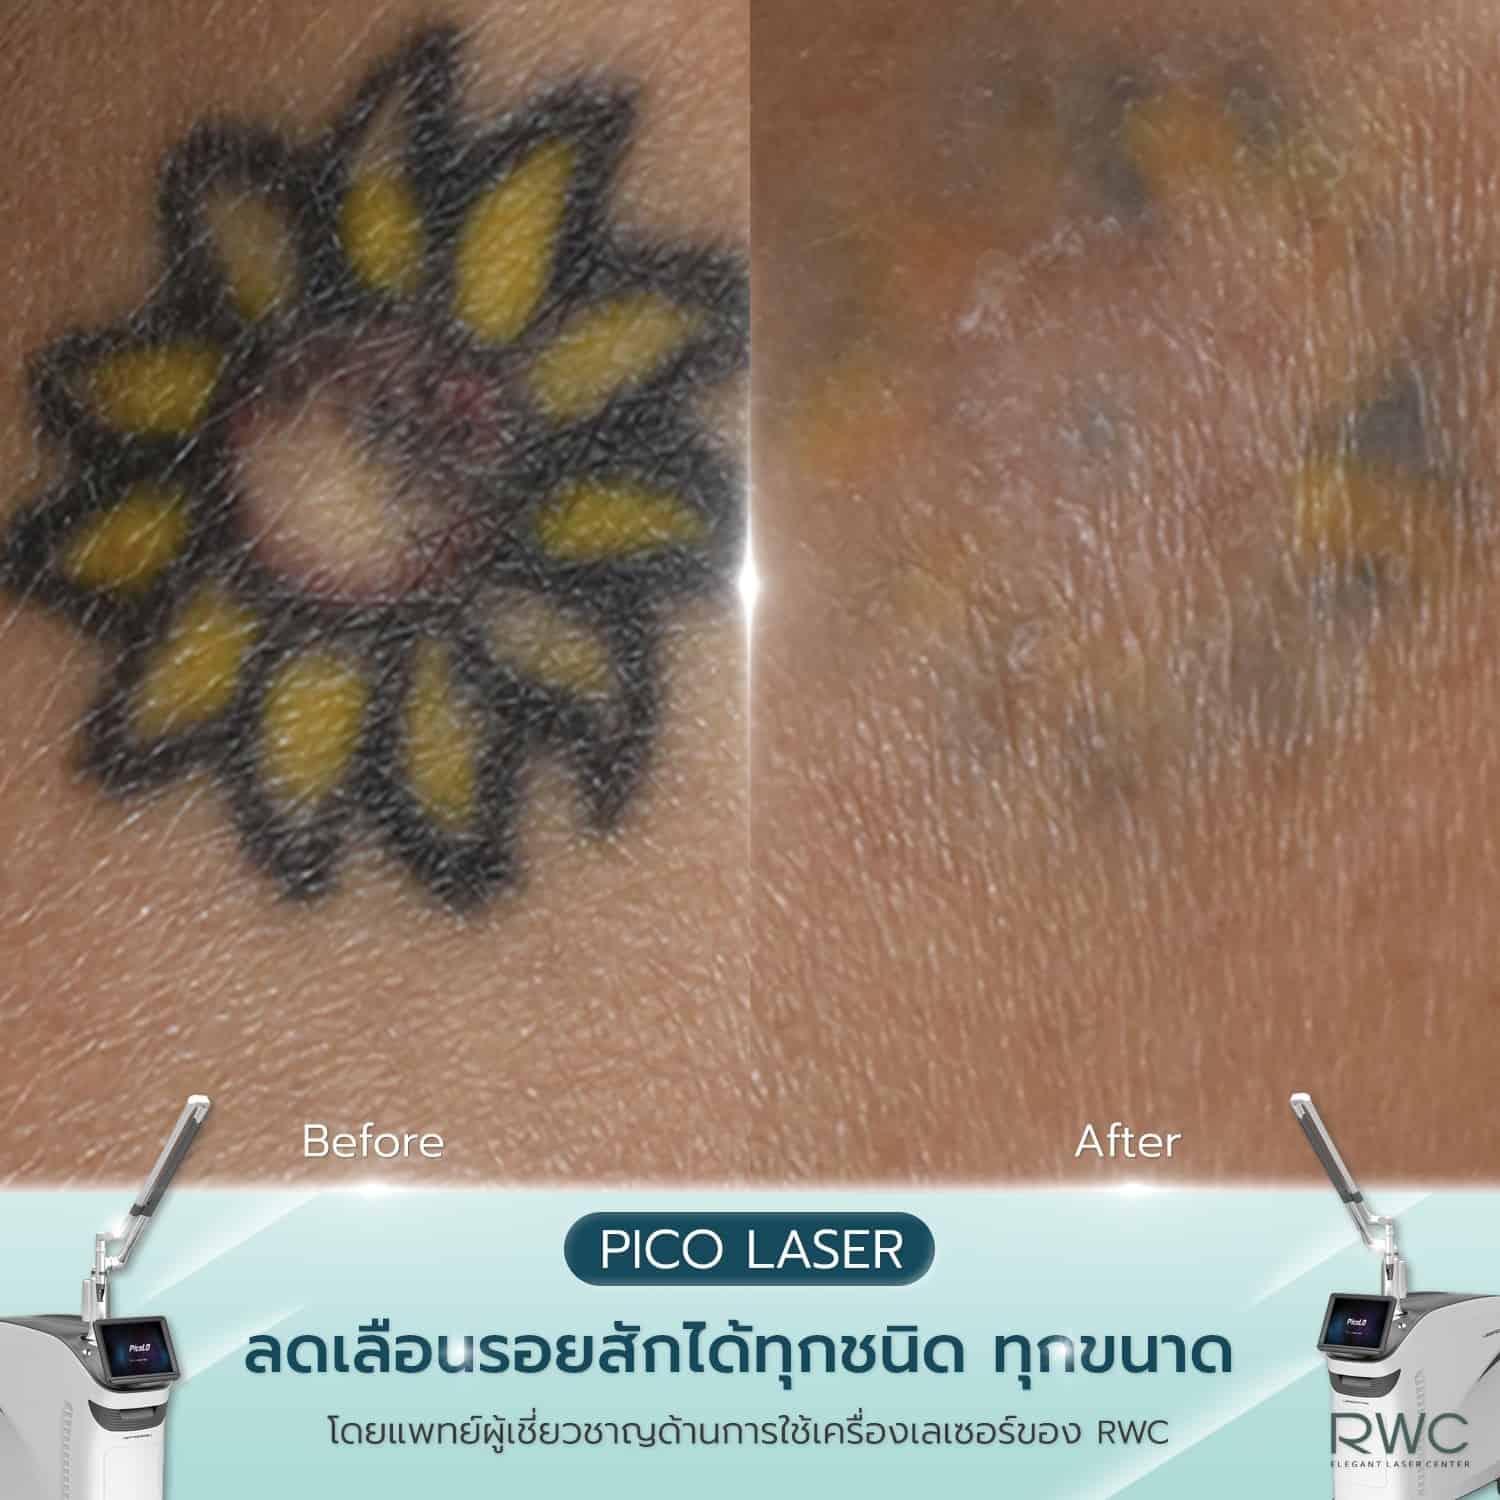 rwc reviews pico laser tattoo